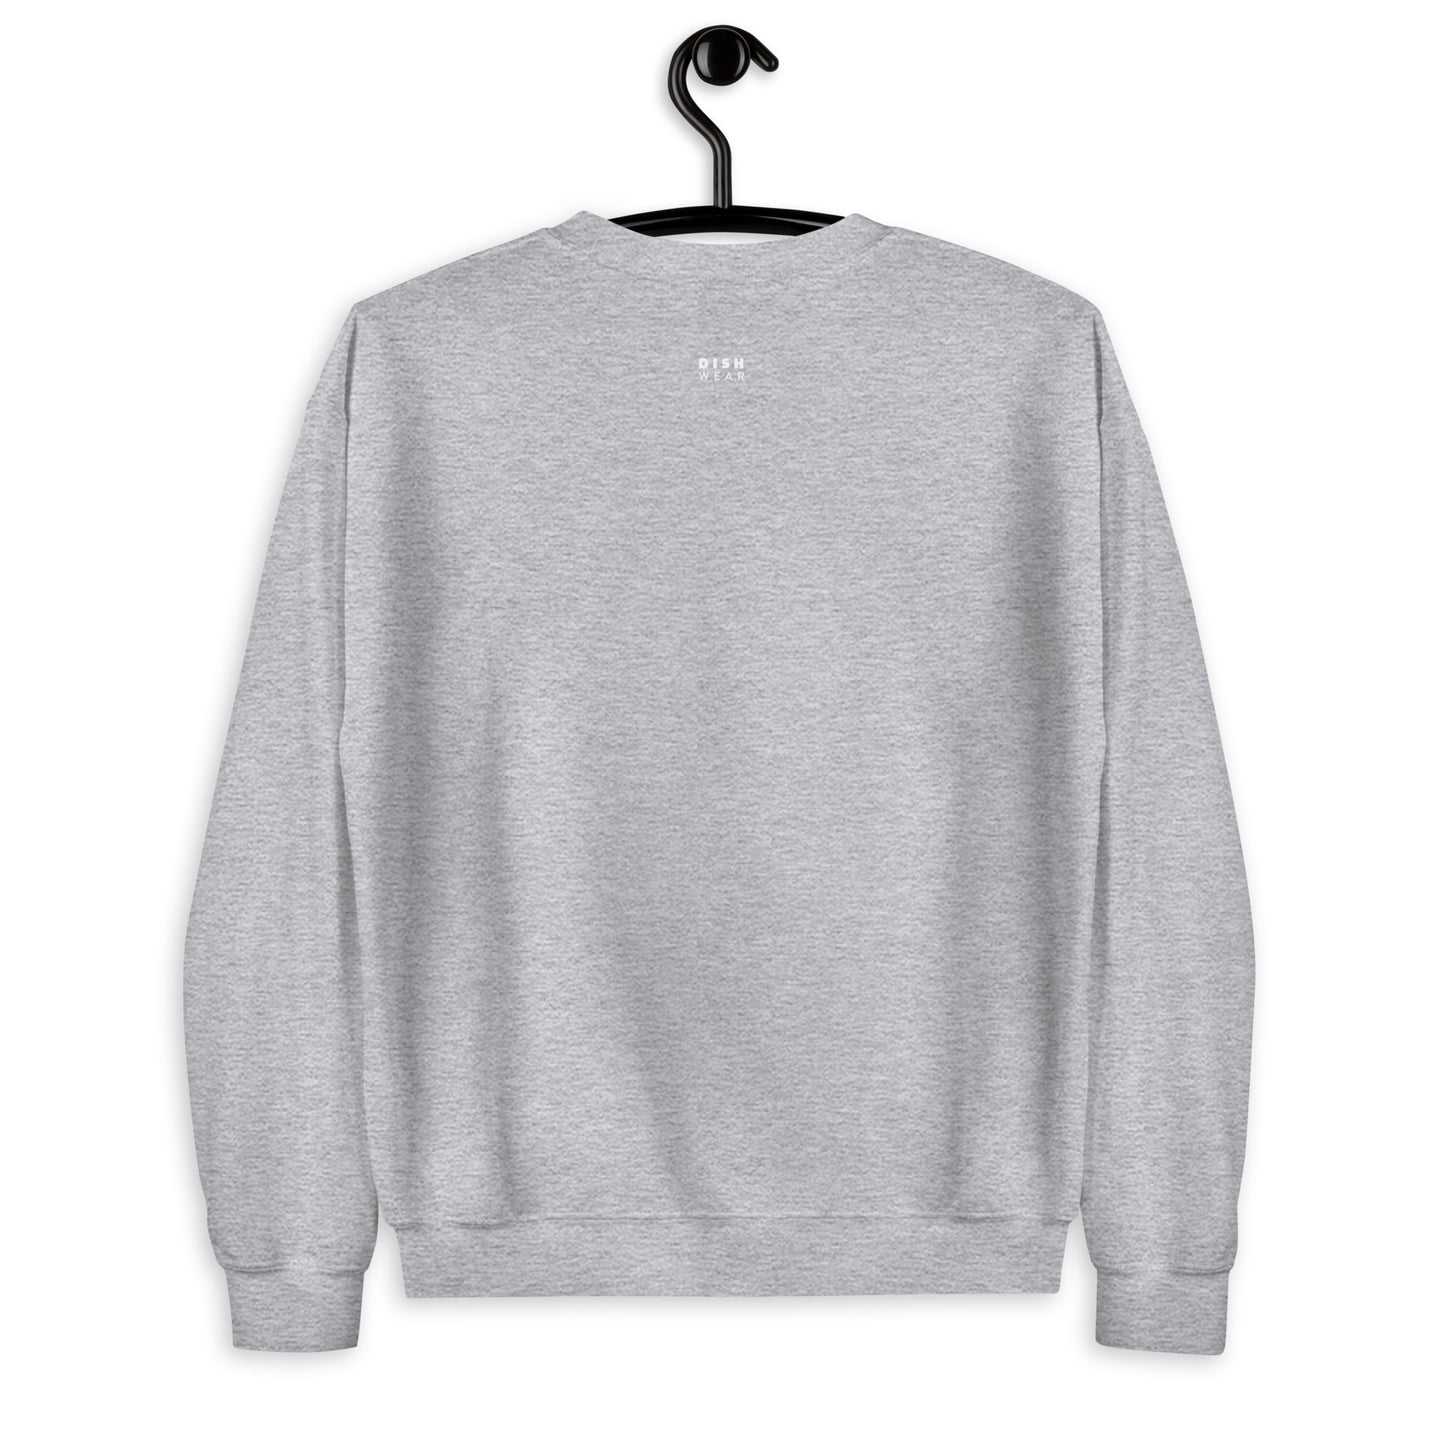 Brisket Sweatshirt - Straight Font